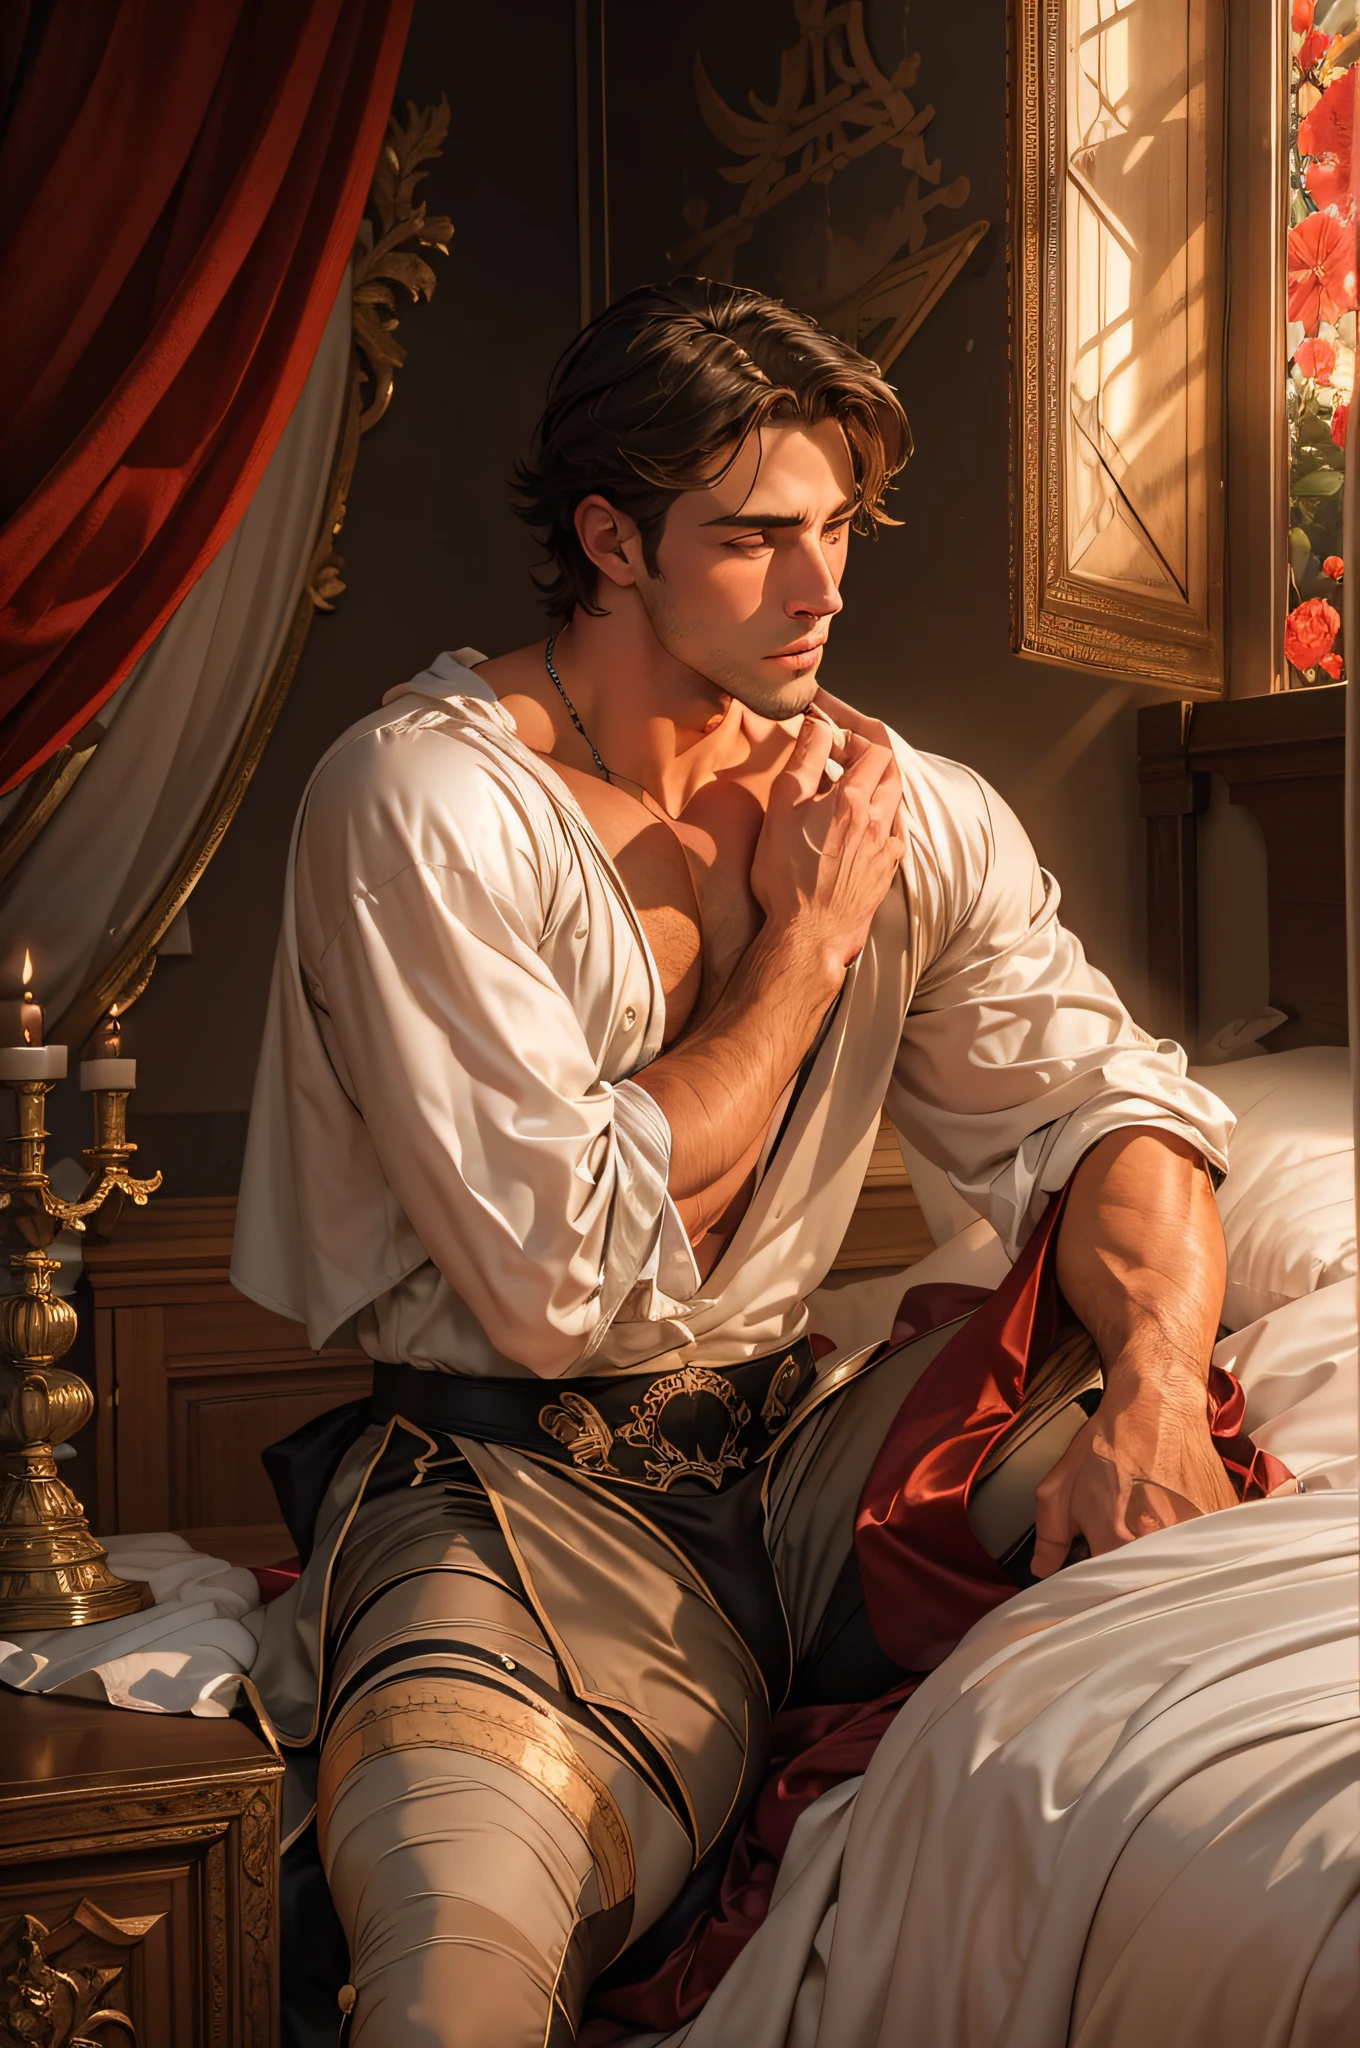 運動型的, 臥室裡有一位英俊的 15 世紀伯爵在浪漫的氛圍中恭候您的光臨, 裸露, 腹股溝蓋著絲綢床單, 誘人的, 色情, 想要性爱, 若弗雷·德·貝拉